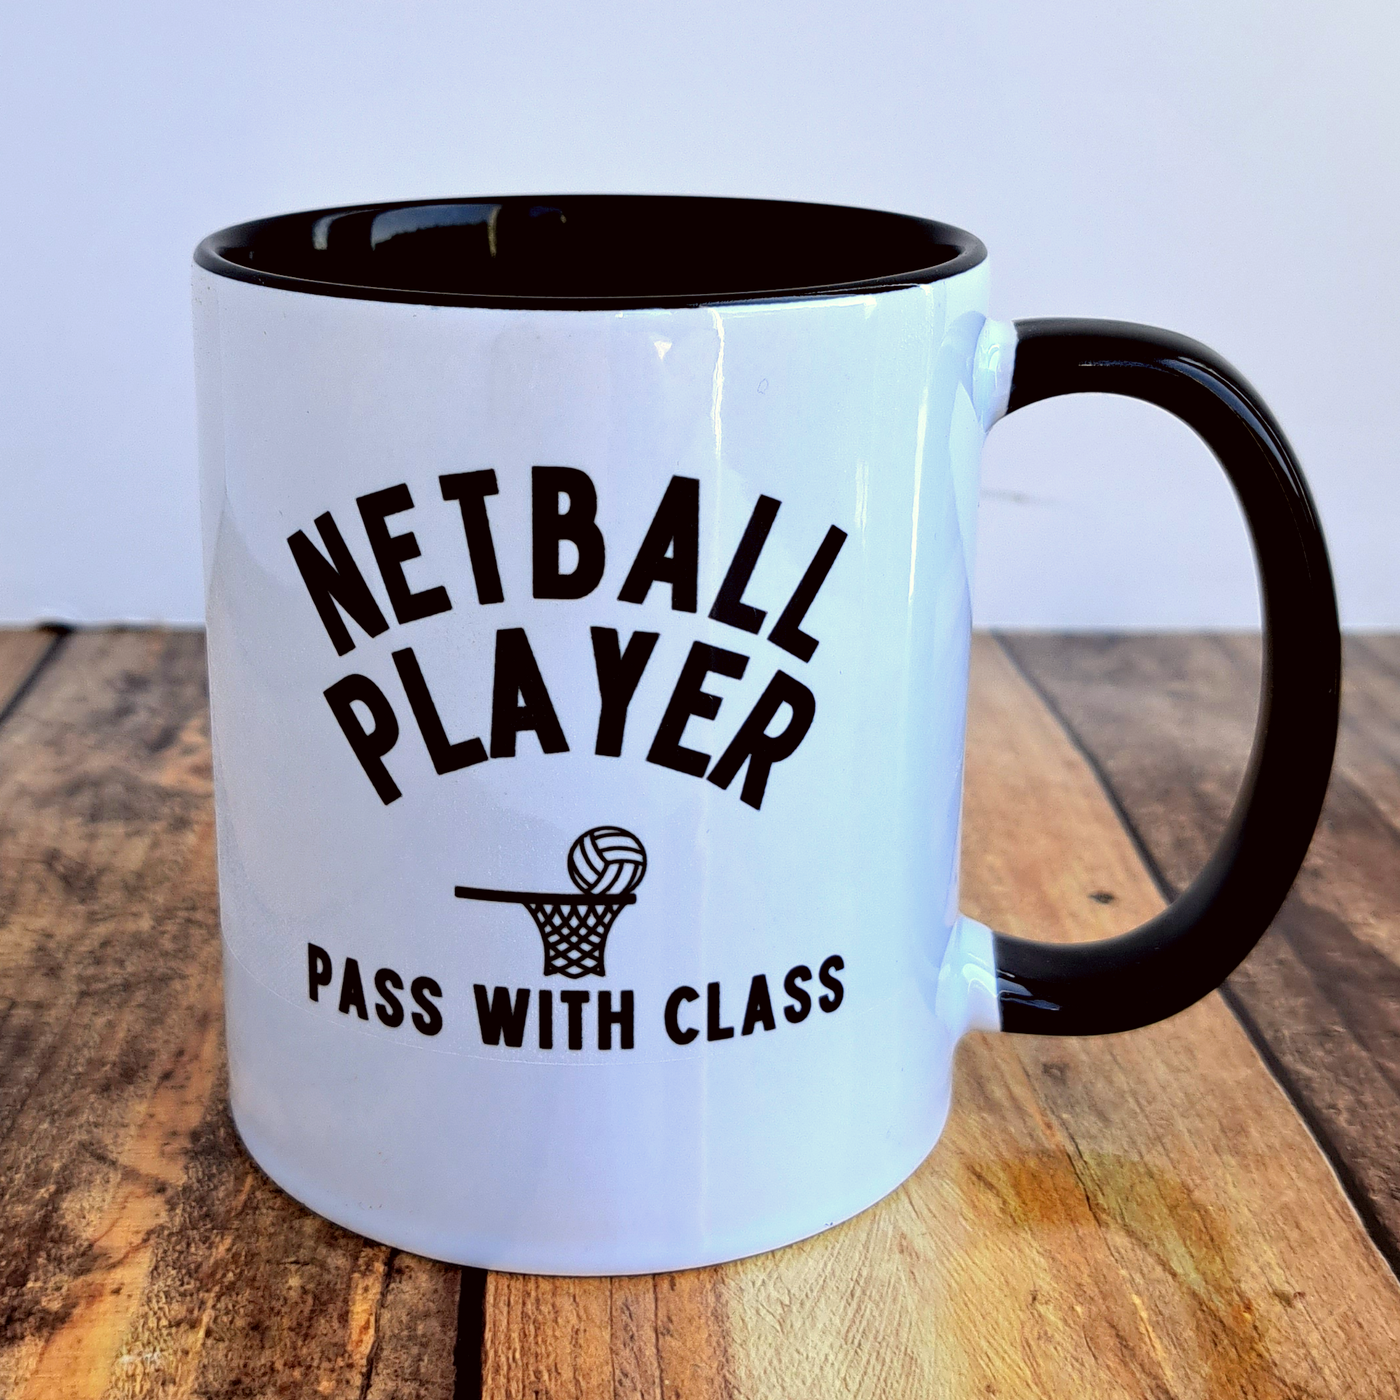 Netball Player - Mug